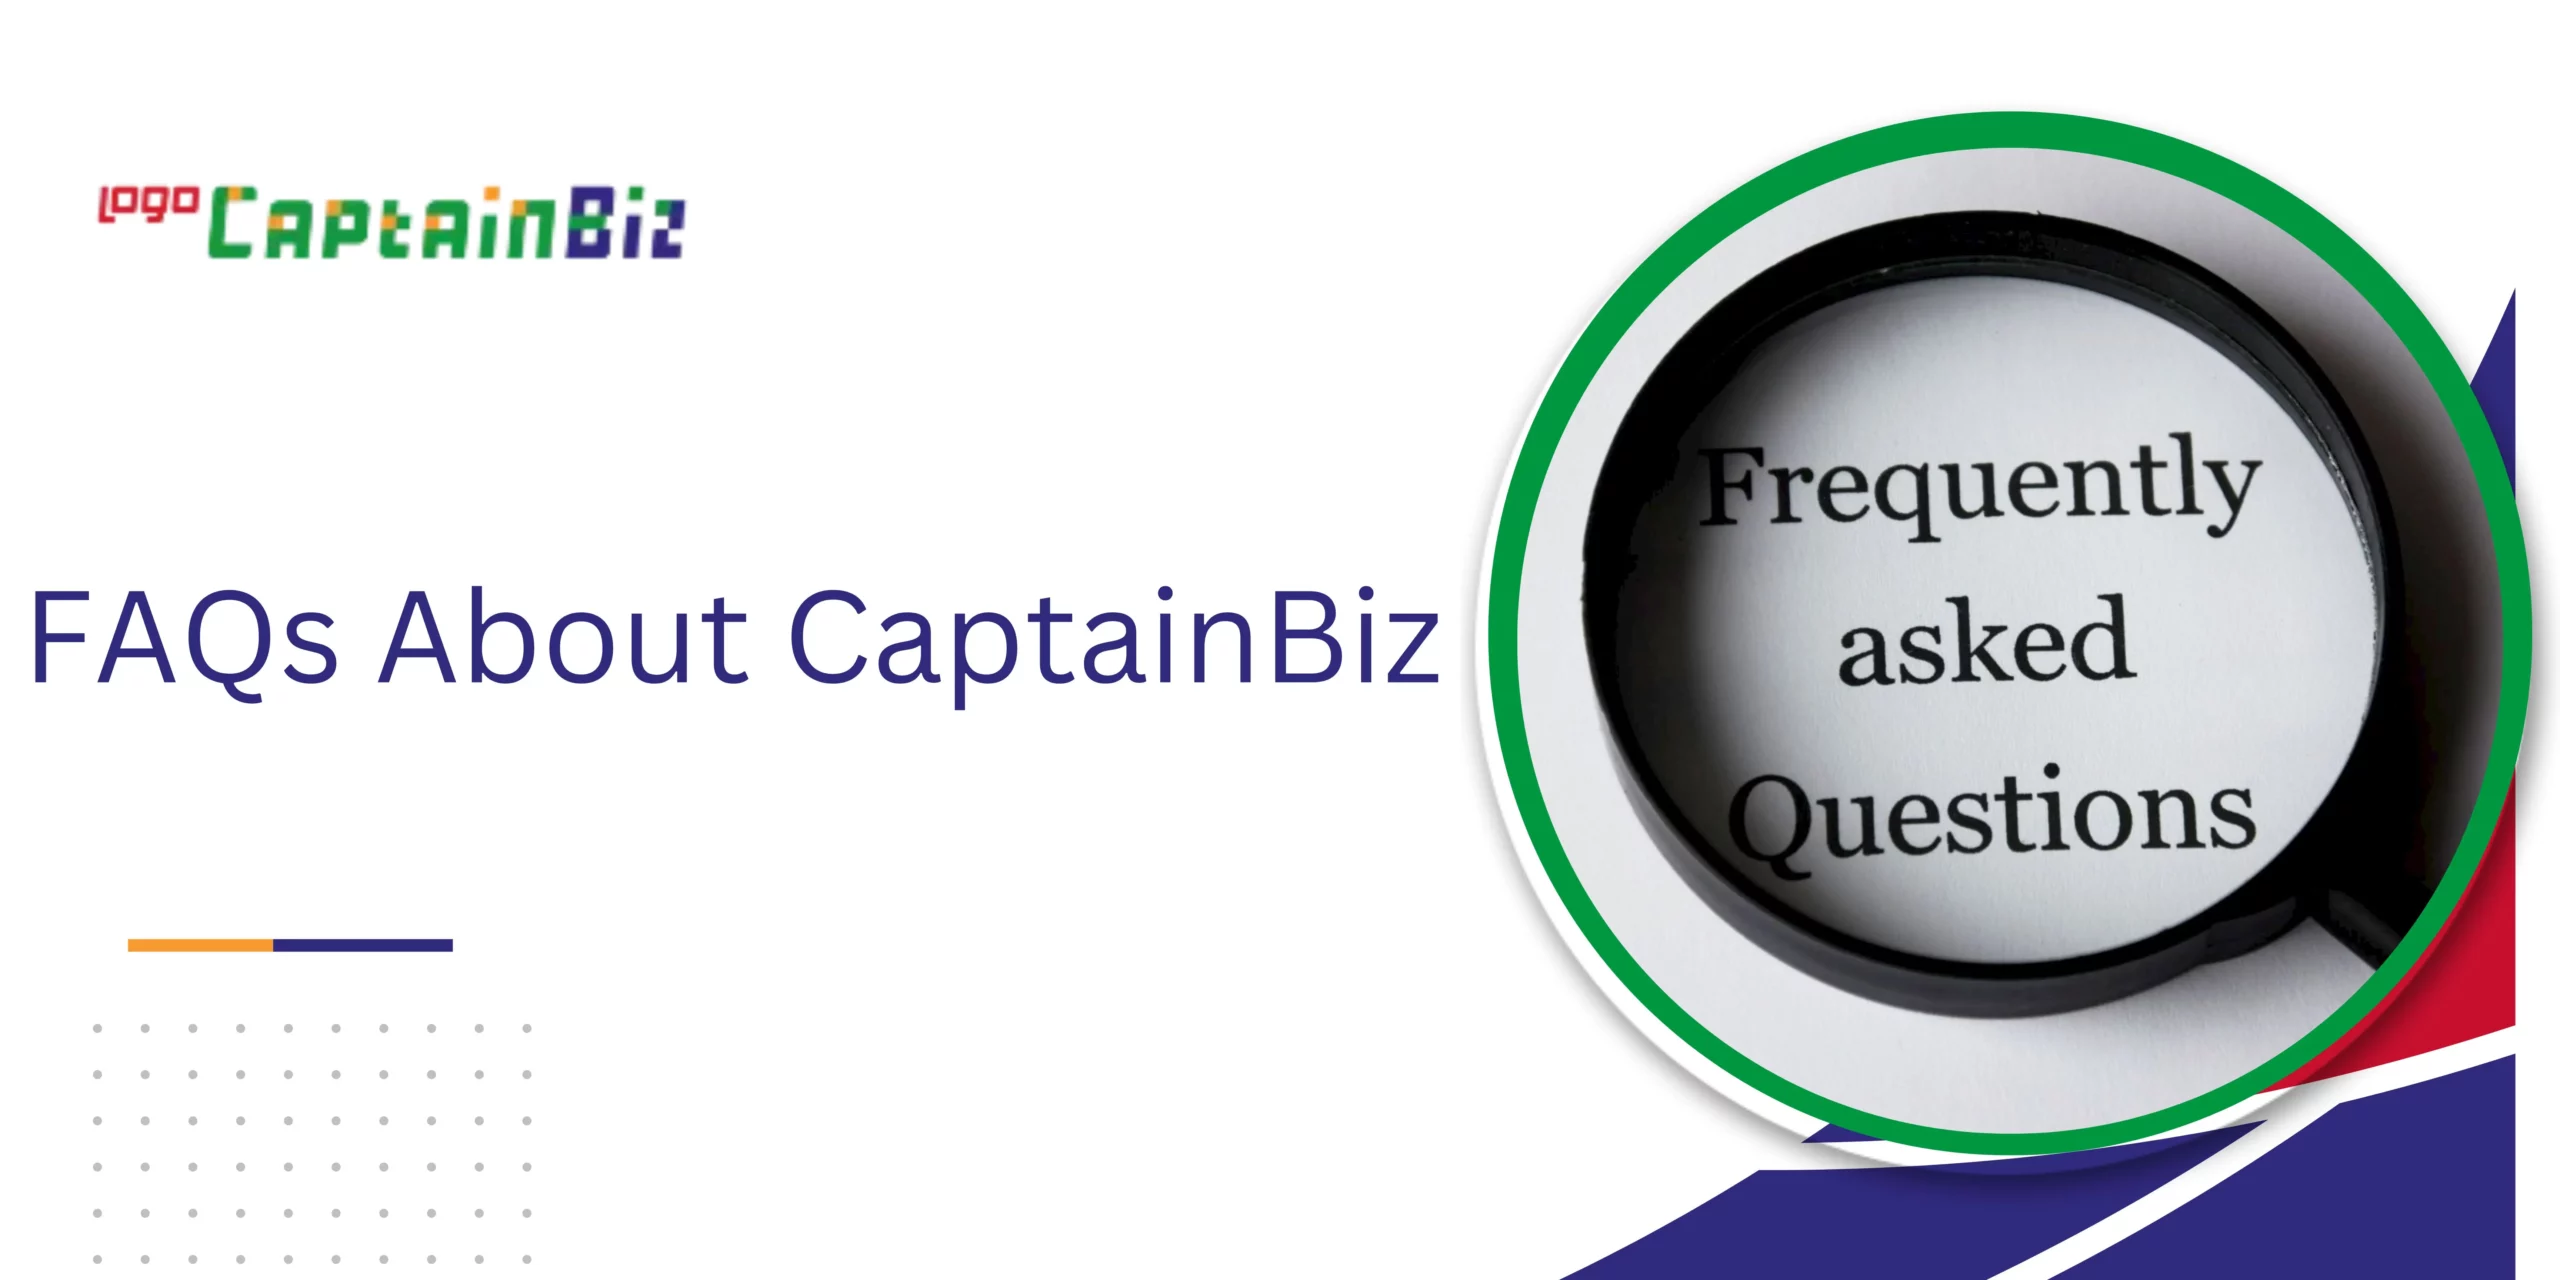 CaptainBiz: FAQs About CaptainBiz